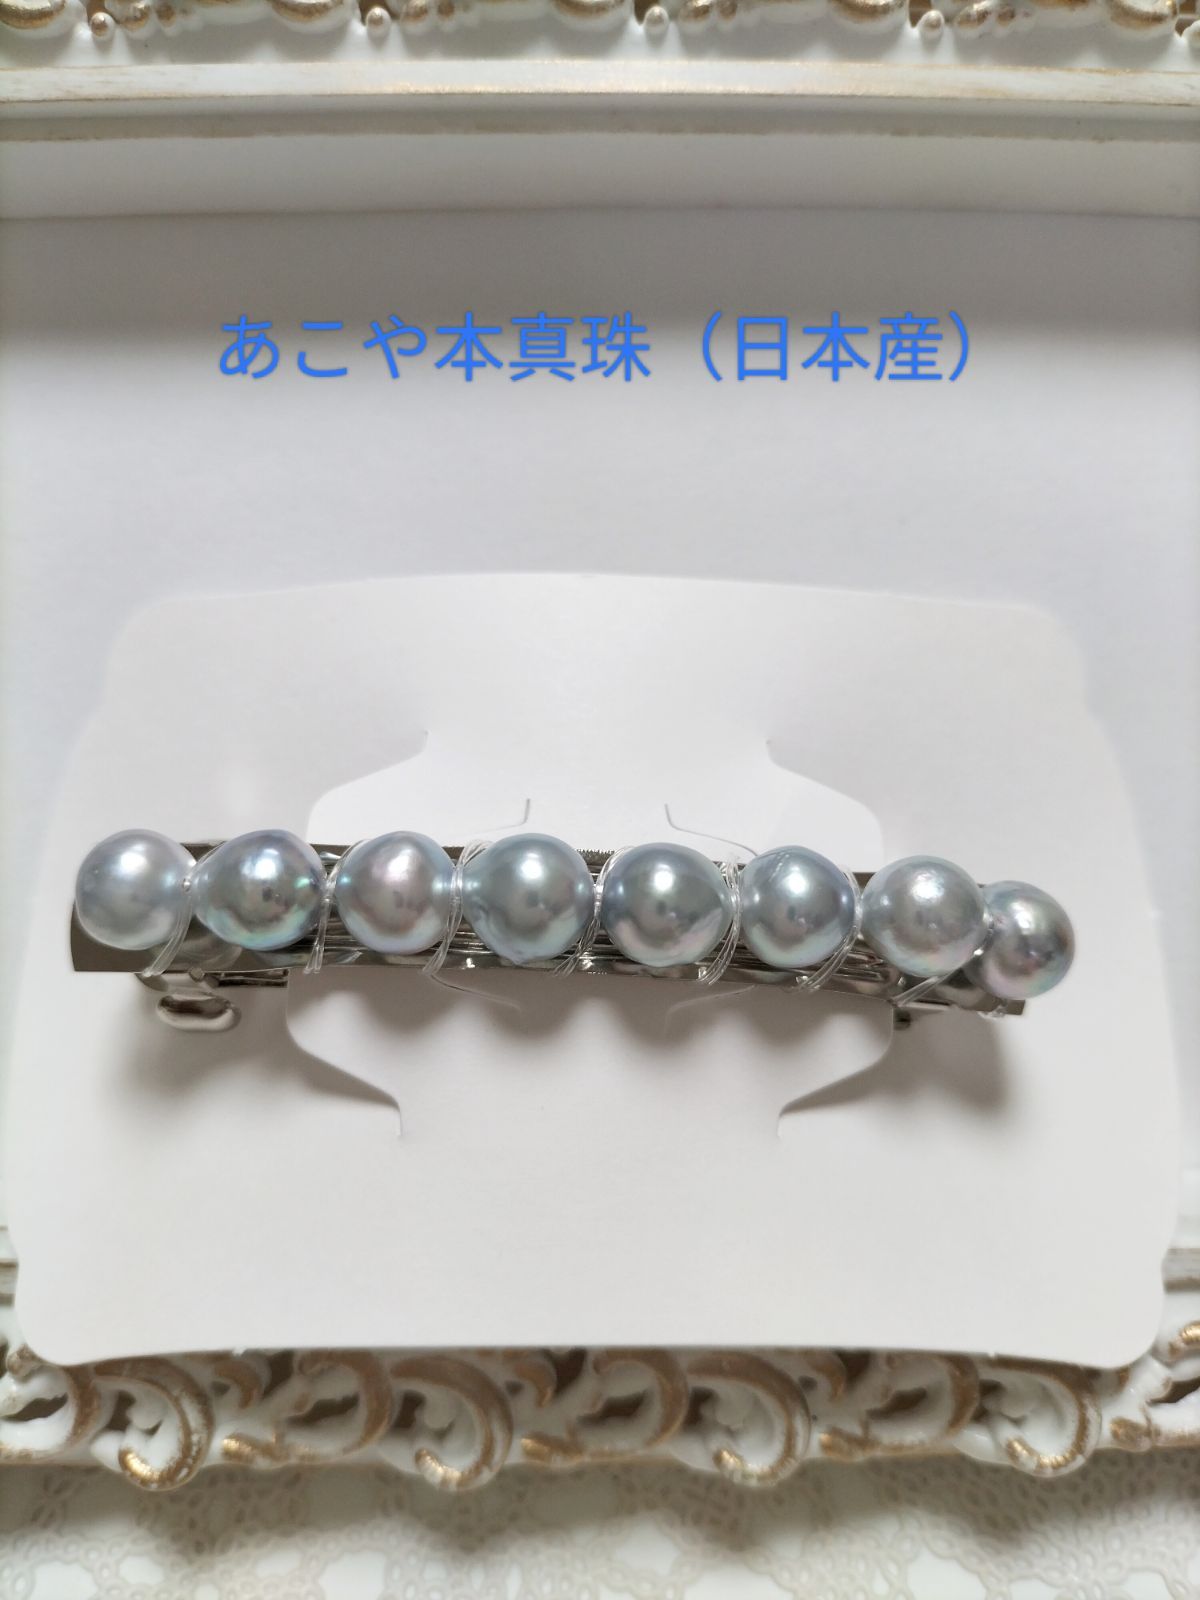 SALE あこや本真珠（日本産）のナチュラルグレーカラー珠のバレッタ